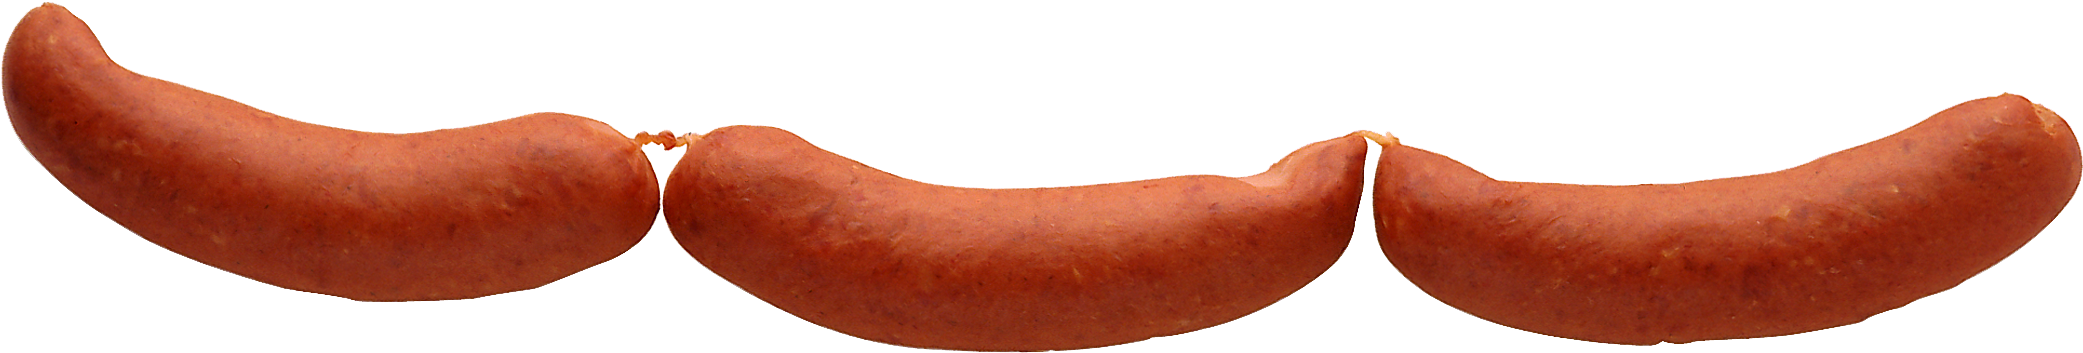 Sausage Png Image - Sausage (2160x507)